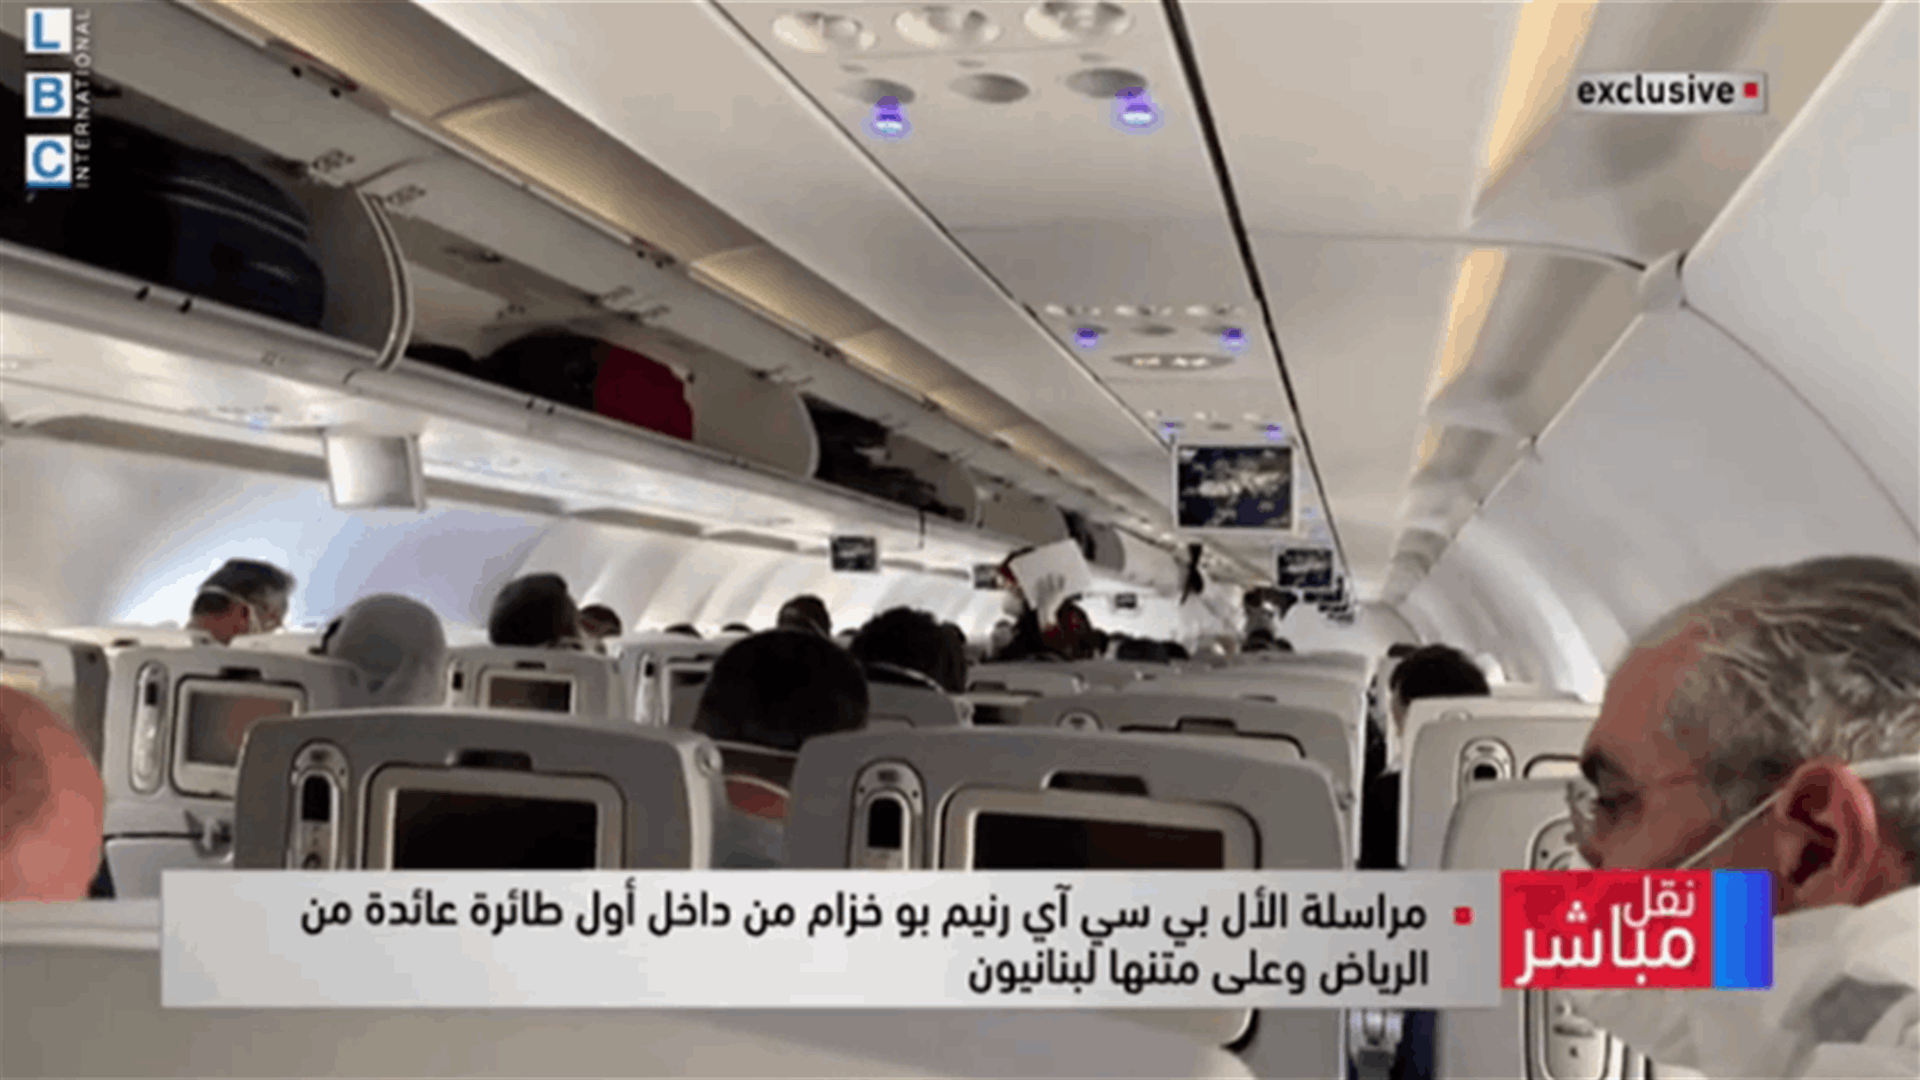 مشاهد حصرية تعرضها الـLBCI من داخل أول طائرة عائدة من الرياض... ما هي الاجراءات المتخذة؟